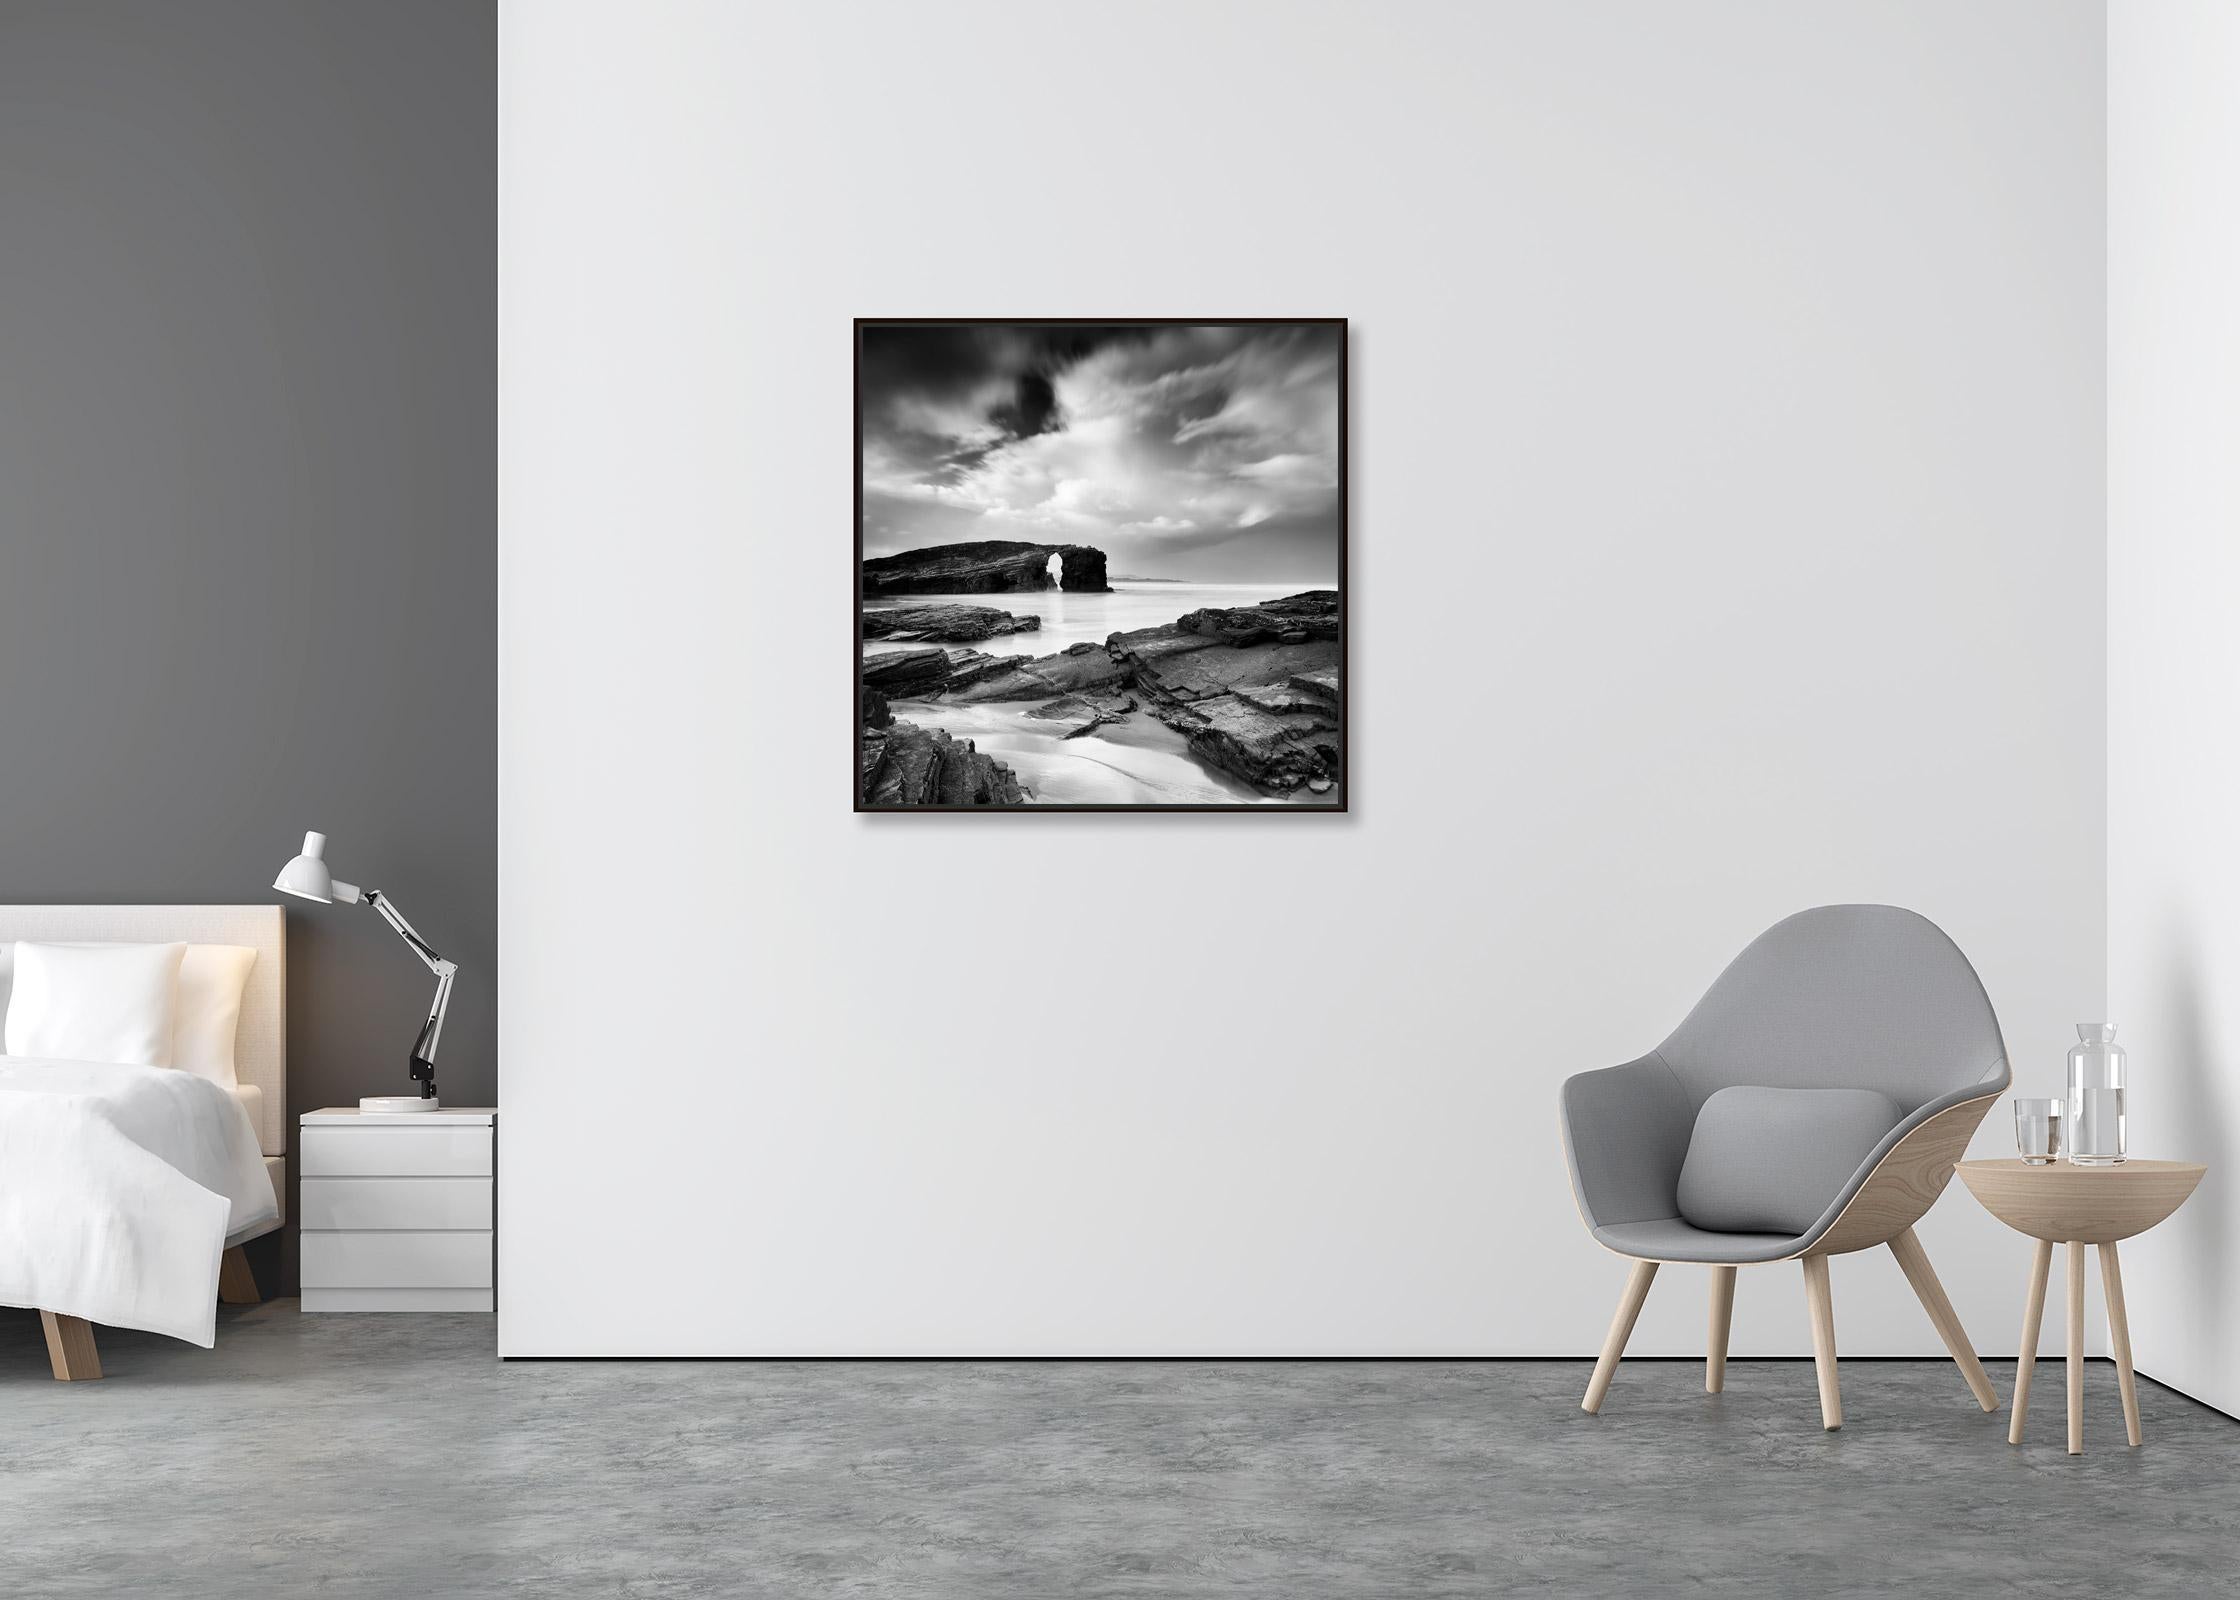 As Catedrais Beach, riesige Sturmwolken, Schwarz-Weiß-Fotografie, Kunstseelandschaft (Zeitgenössisch), Photograph, von Gerald Berghammer